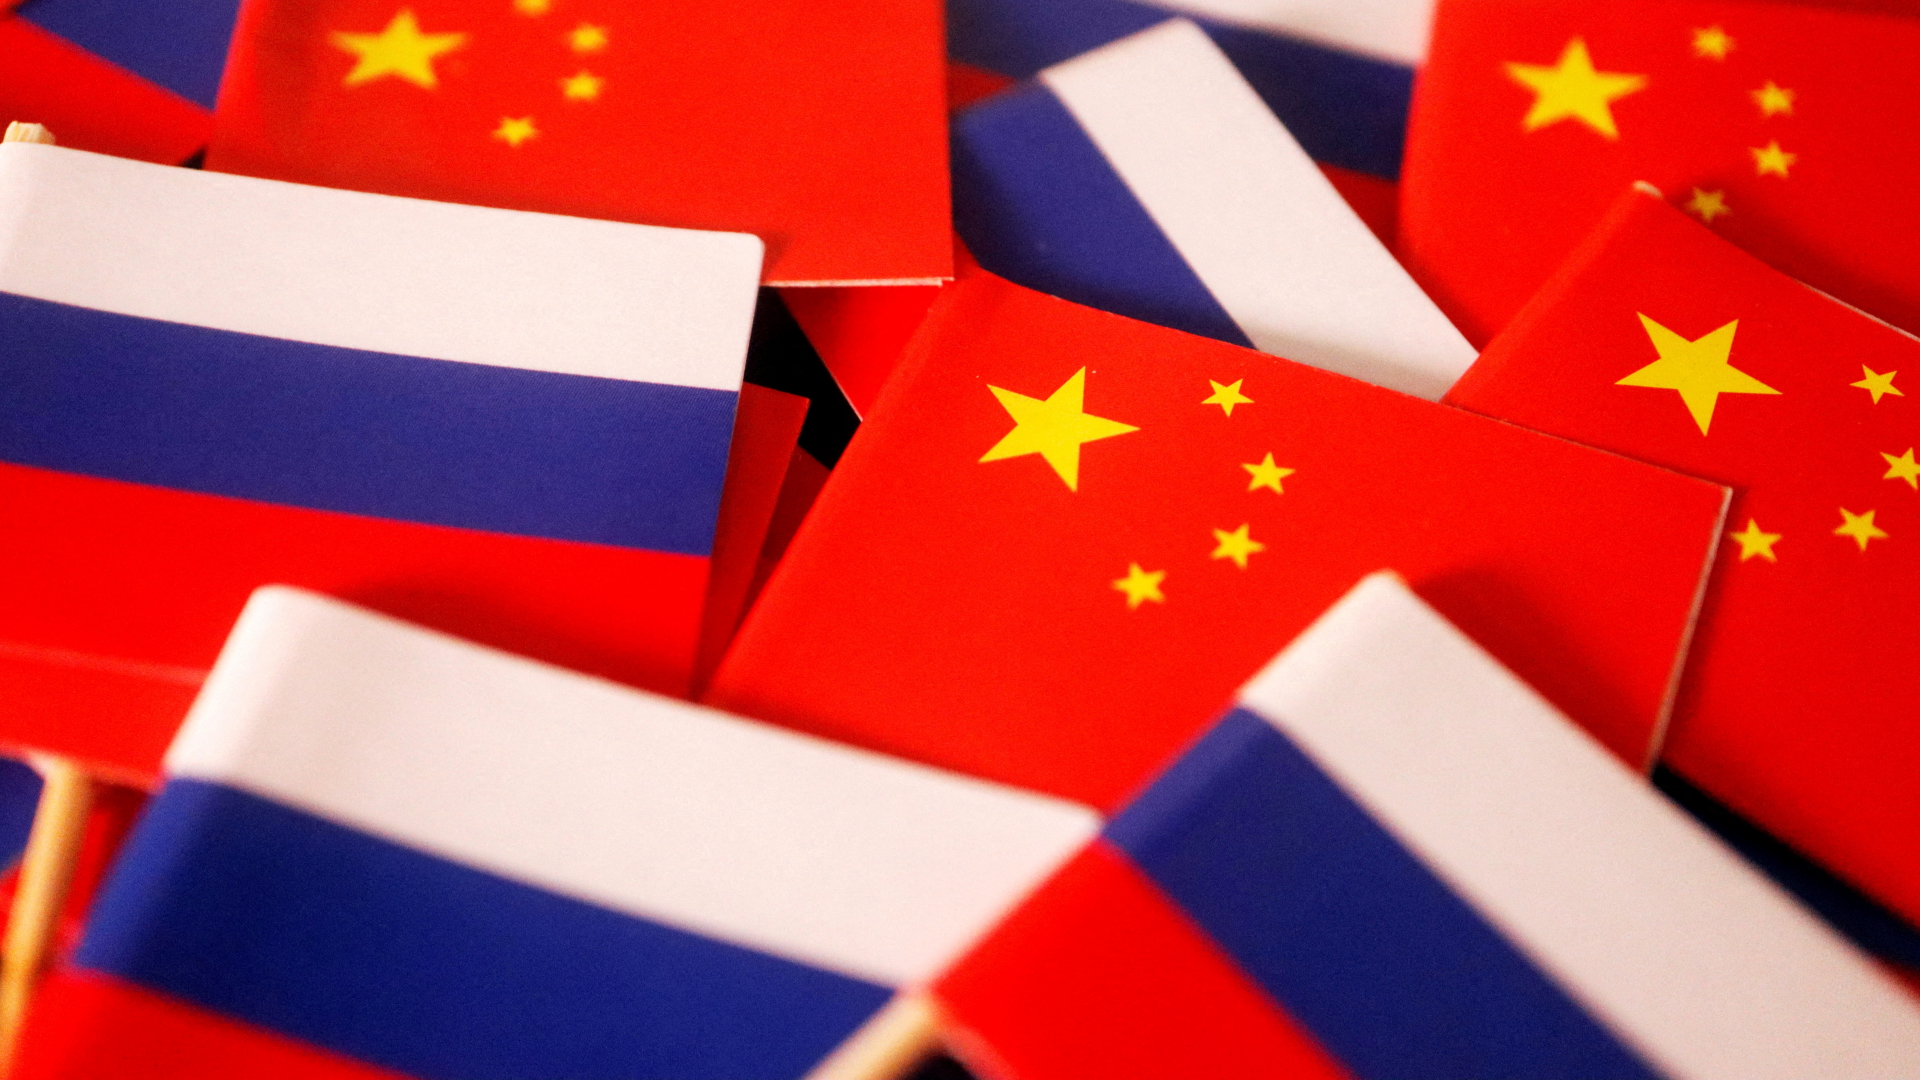 Flaggen von China und Russland | REUTERS